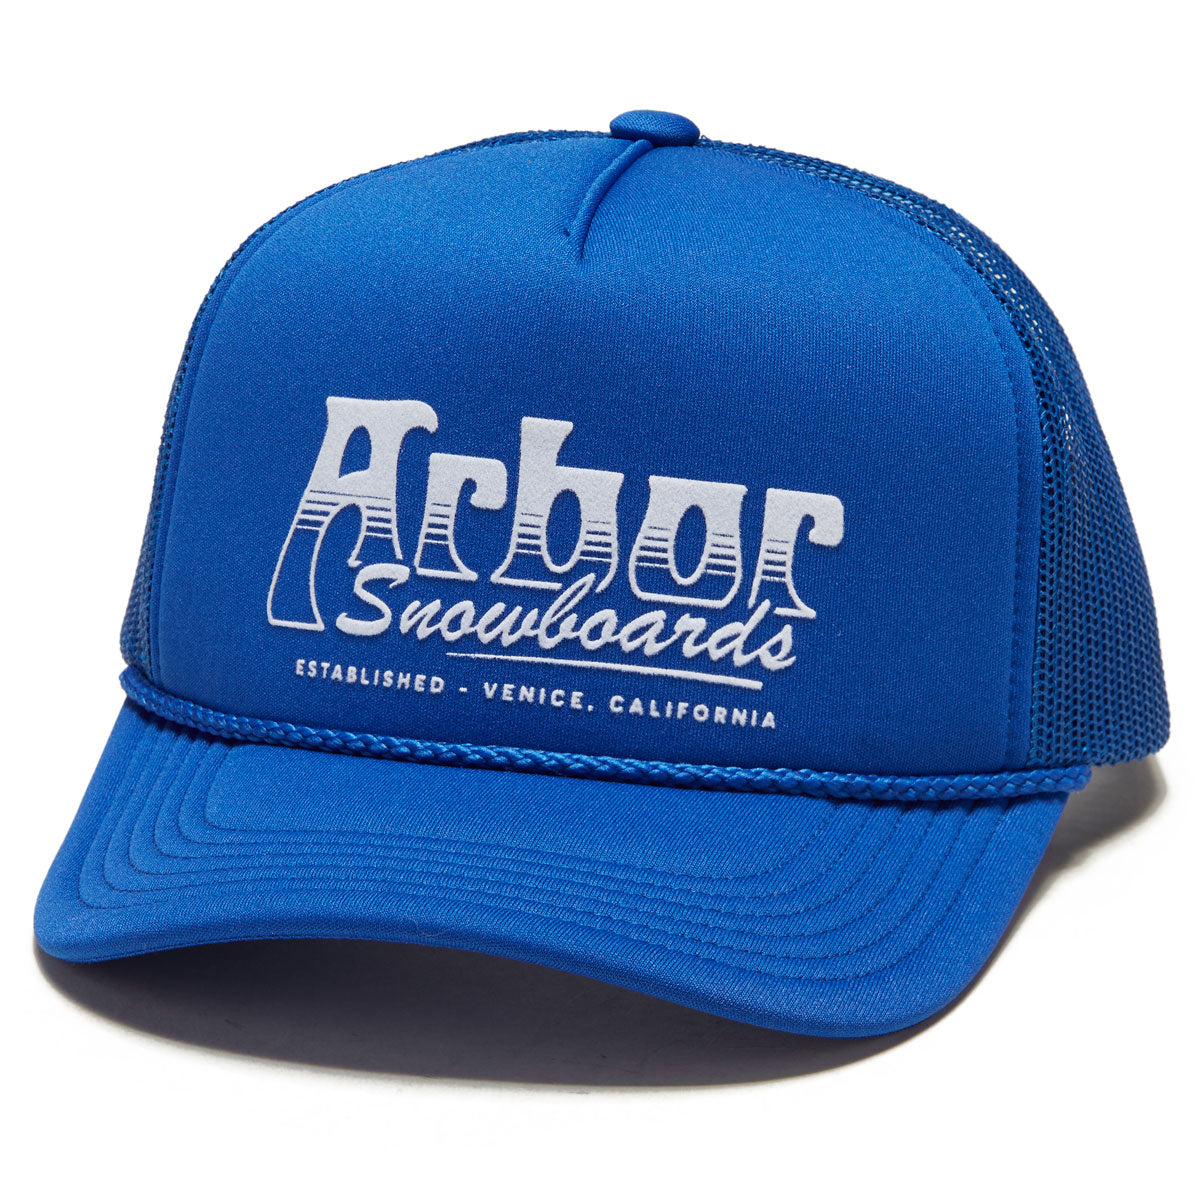 Arbor Breaker Trucker Hat - Blue image 1